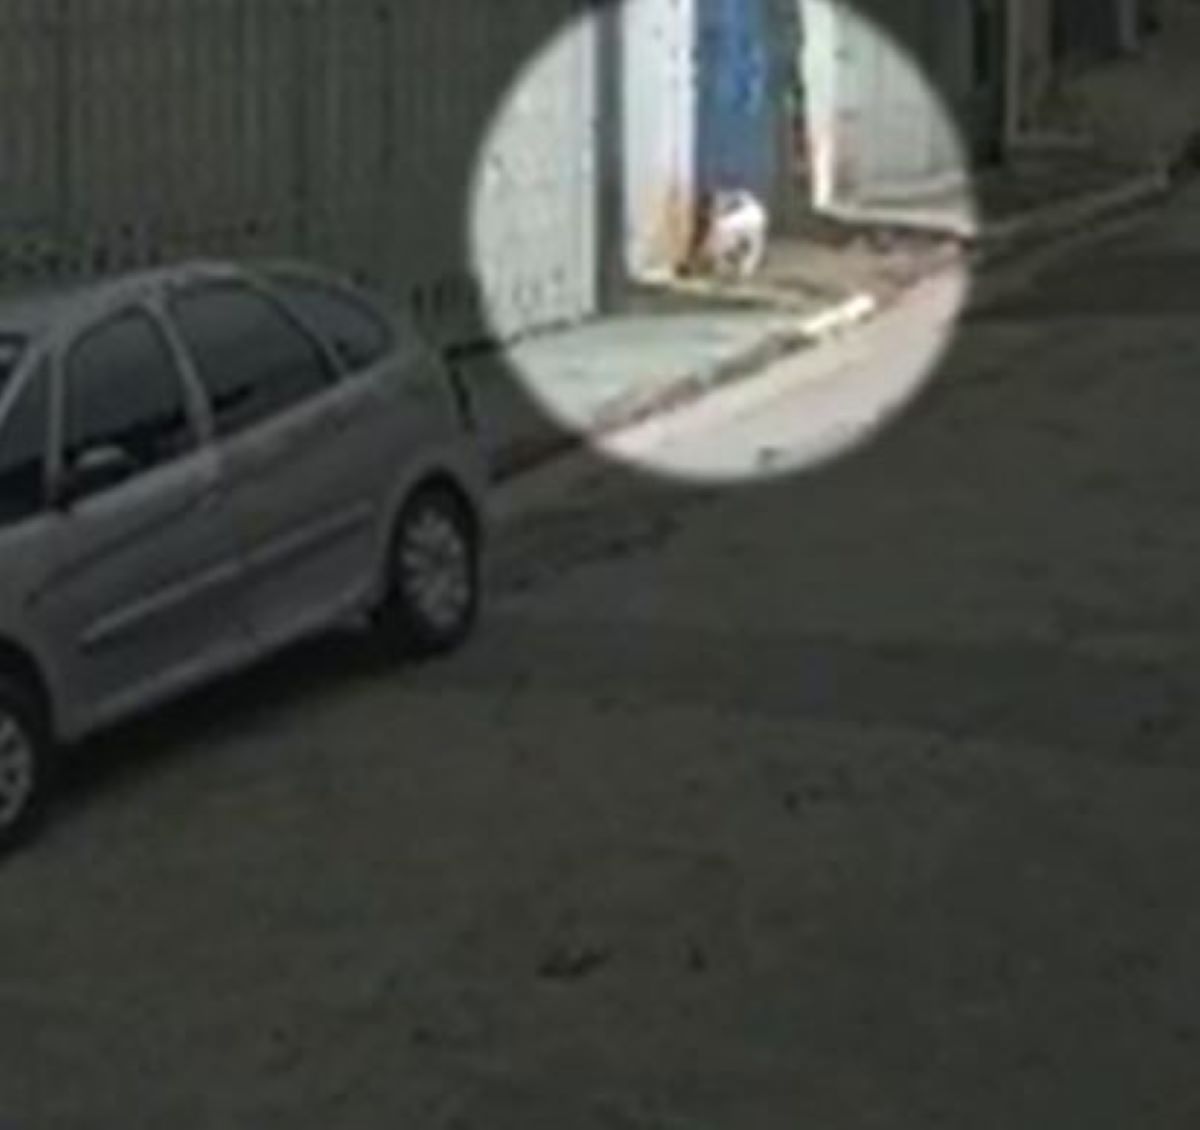  câmera registra ataque pitbull 